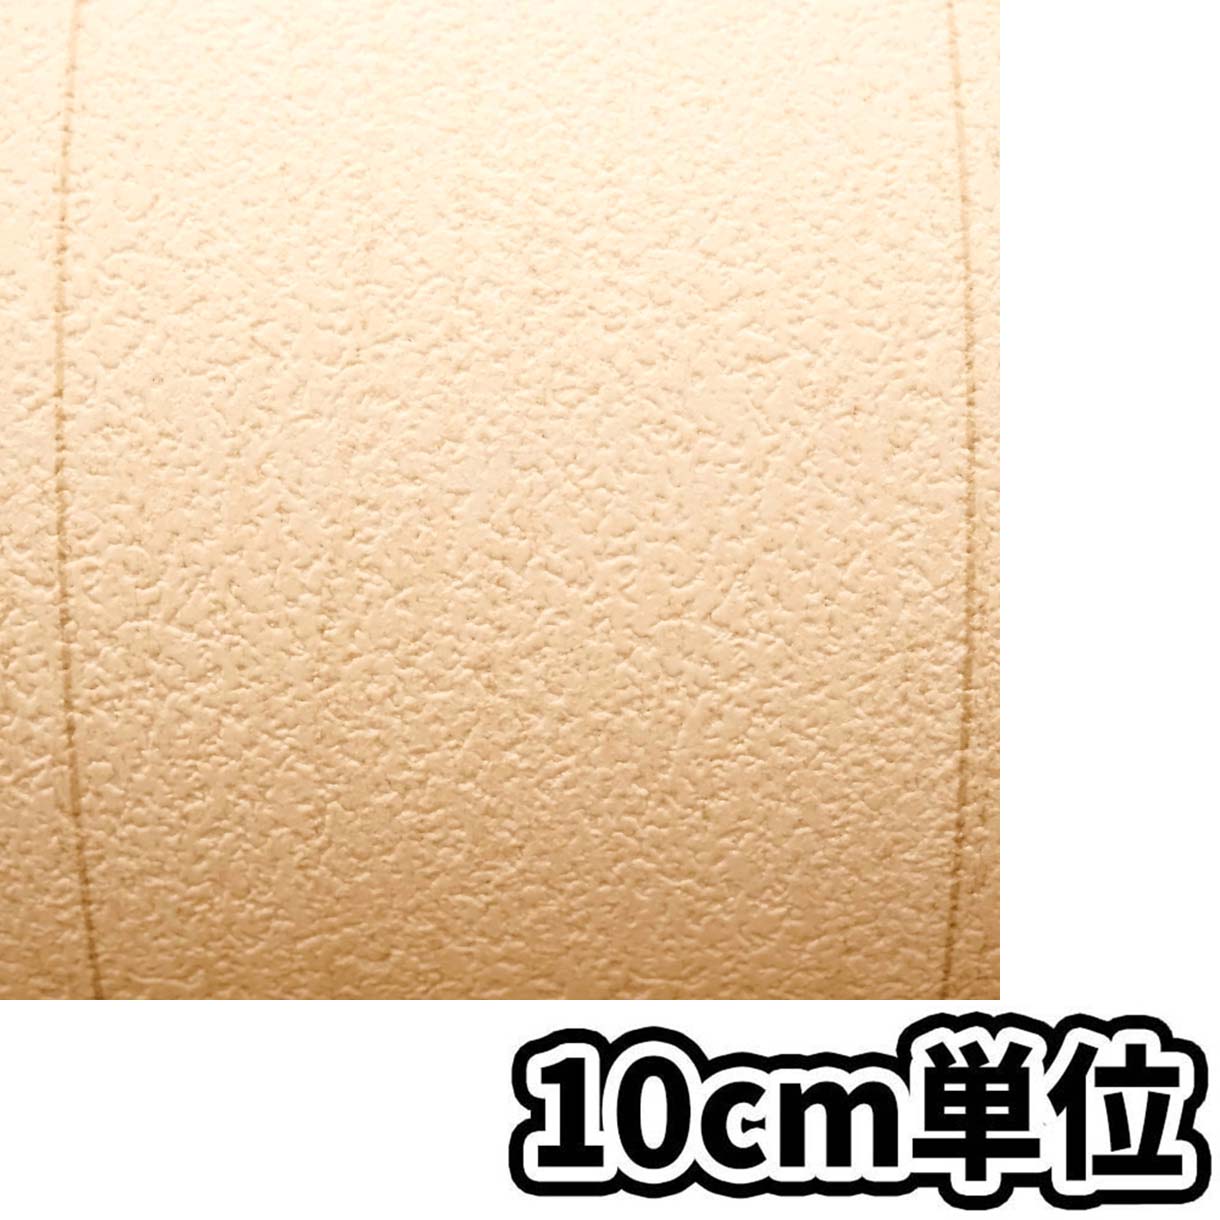 屋内外床材IOF-1011WH シンプル木 91.5cm巾x10m巻　10cm当たり